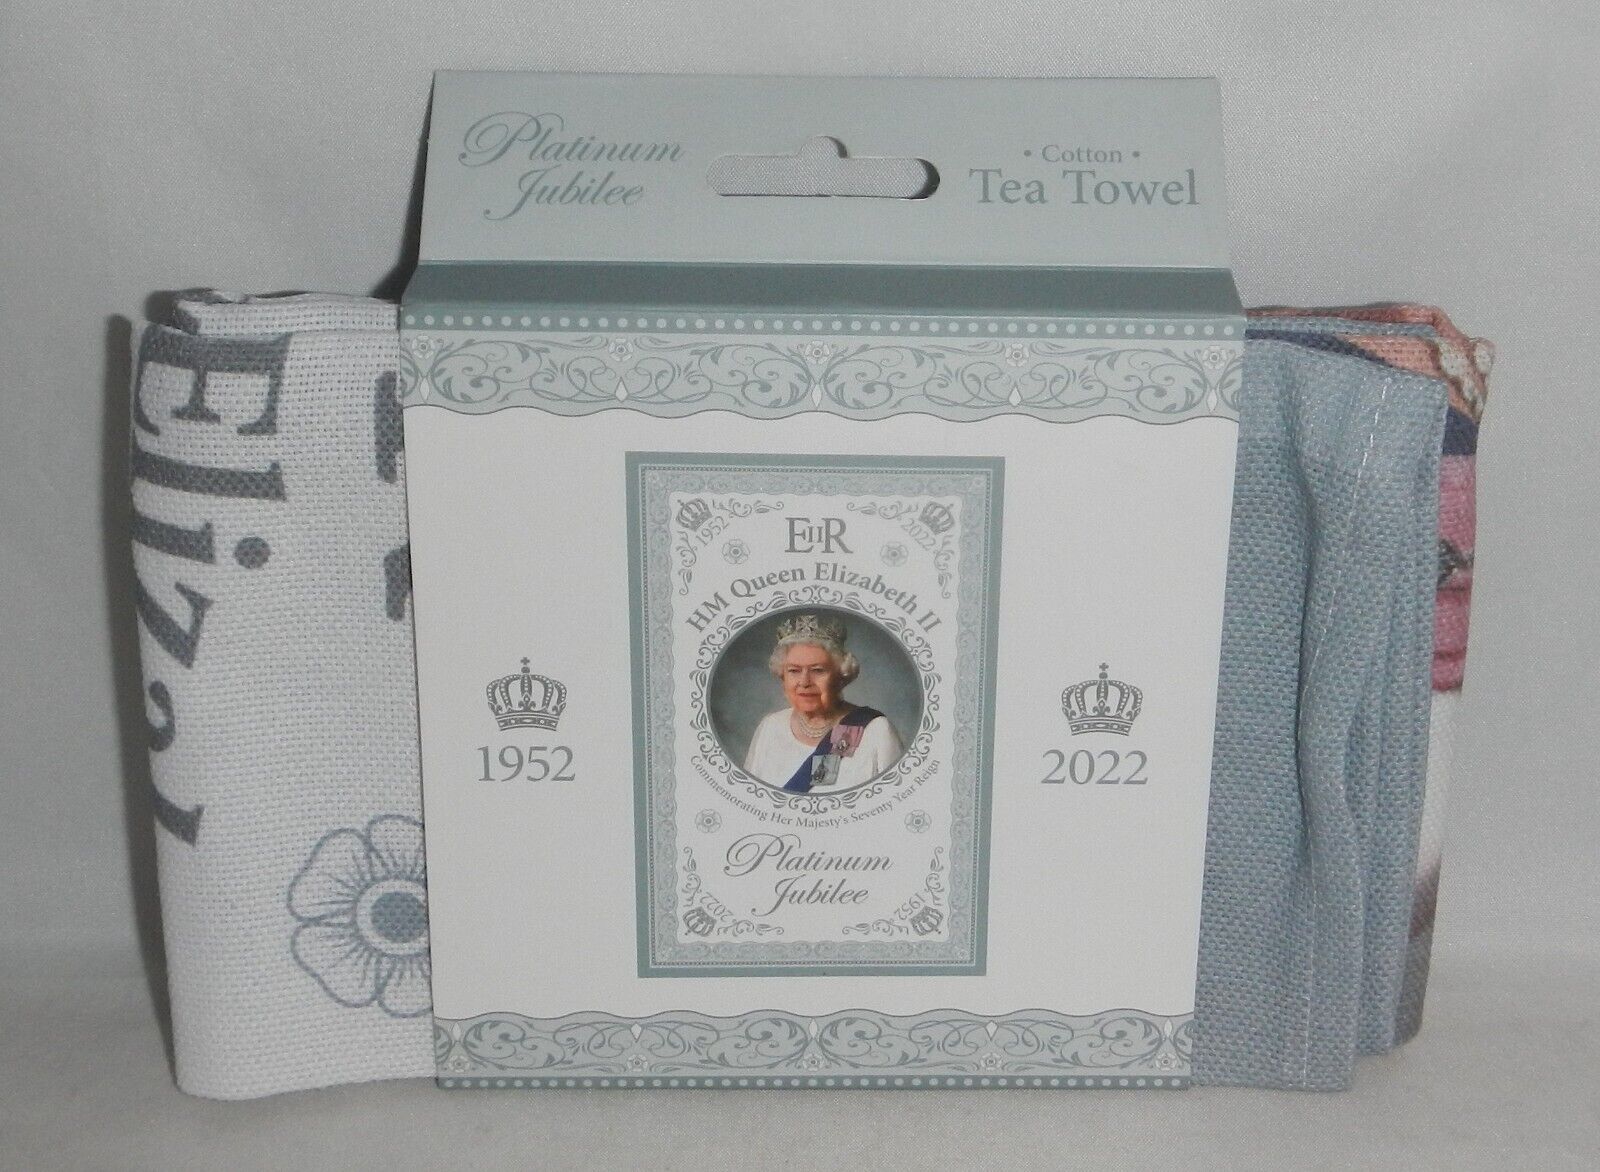 2022 Platinum Jubilee of HM Queen Elizabeth II Great Britain Cotton Tea Towel